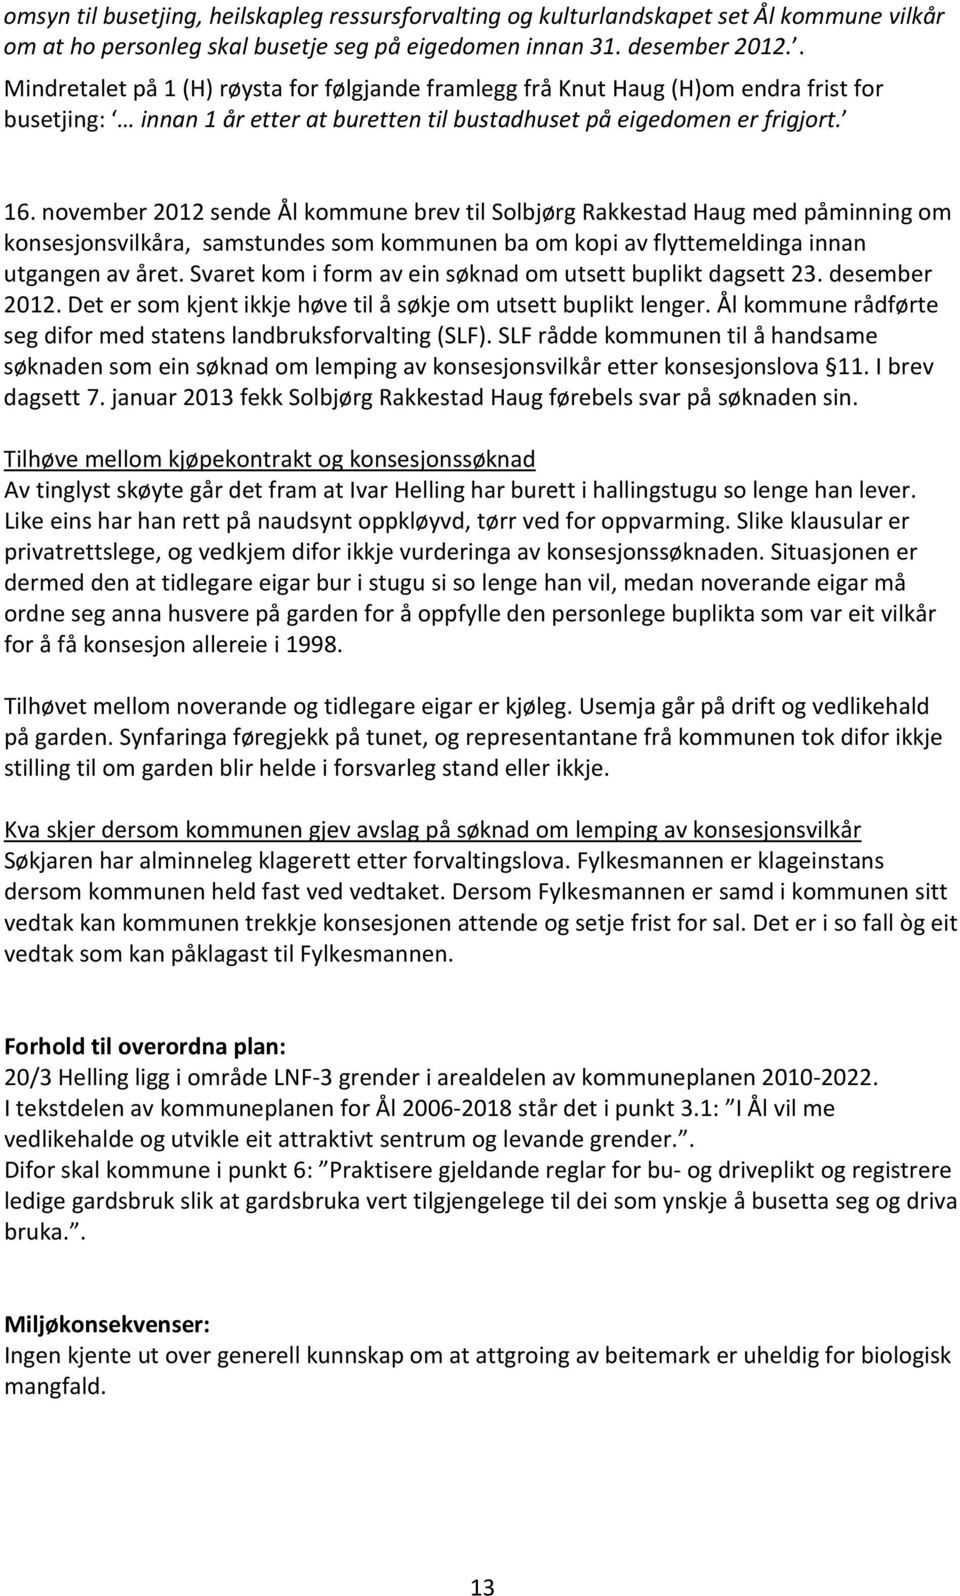 november 2012 sende Ål kommune brev til Solbjørg Rakkestad Haug med påminning om konsesjonsvilkåra, samstundes som kommunen ba om kopi av flyttemeldinga innan utgangen av året.